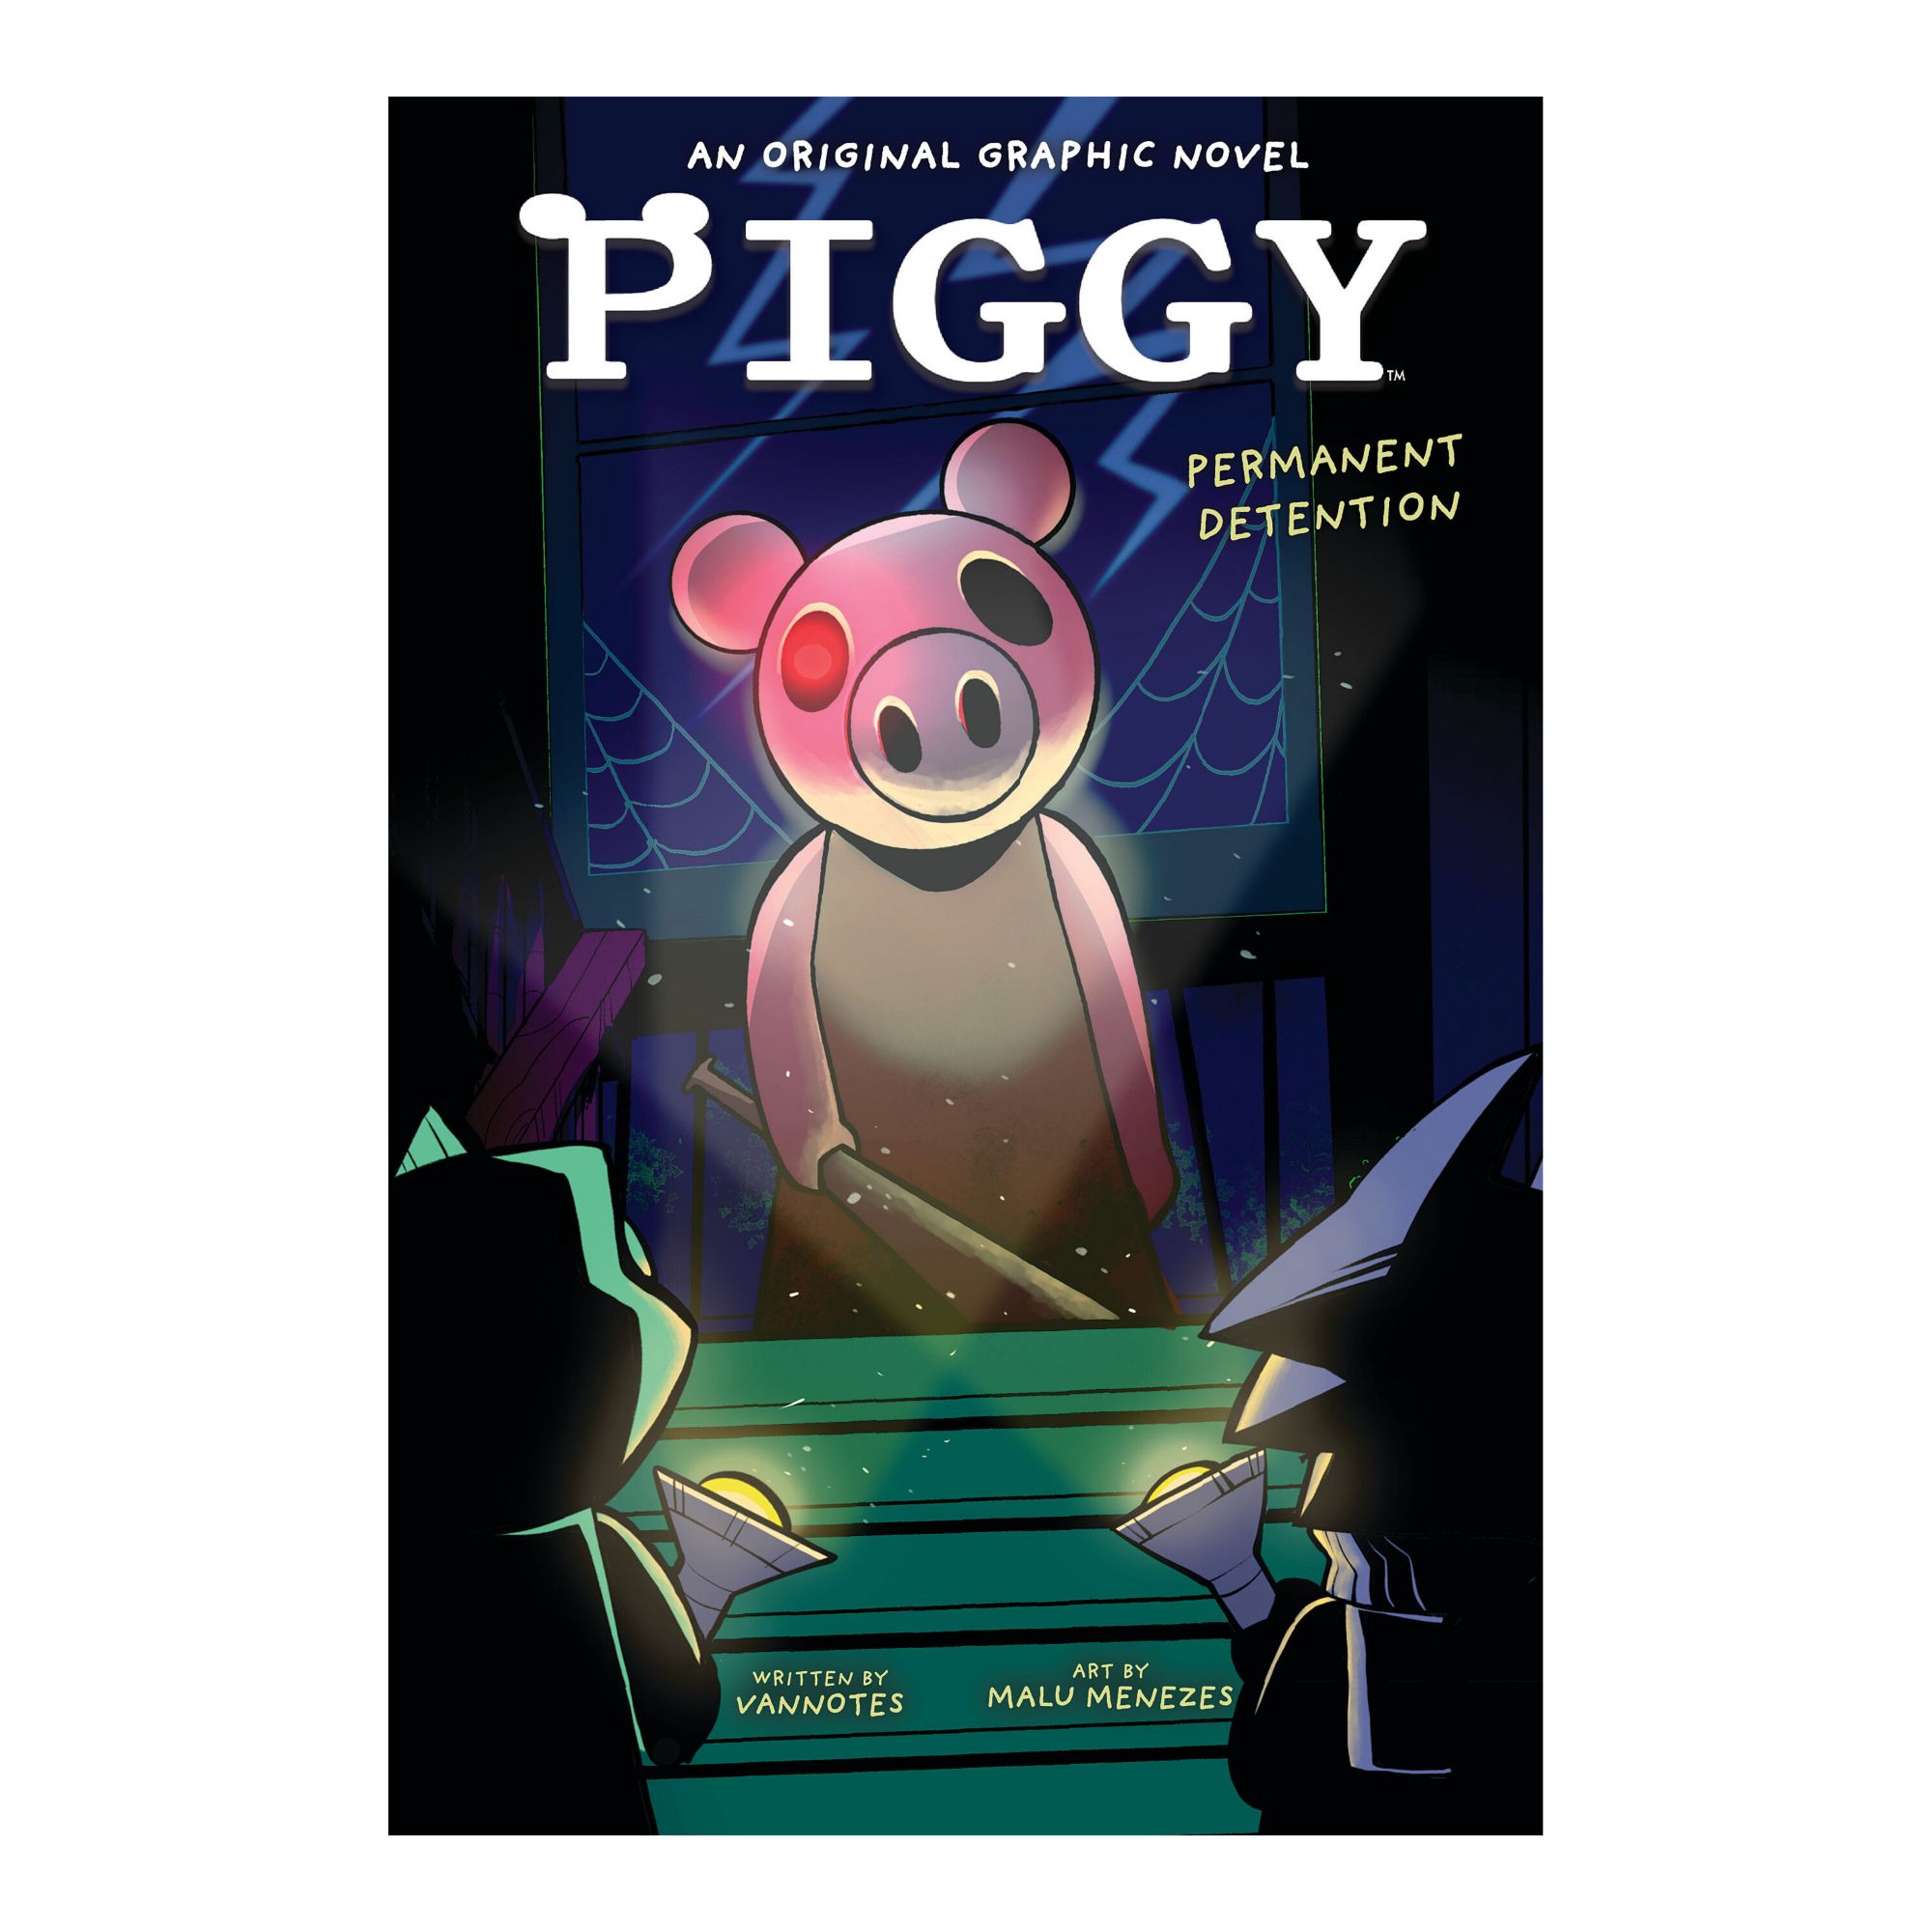 Permanent Detention (piggy Original Graphic Novel) - By Vannotes